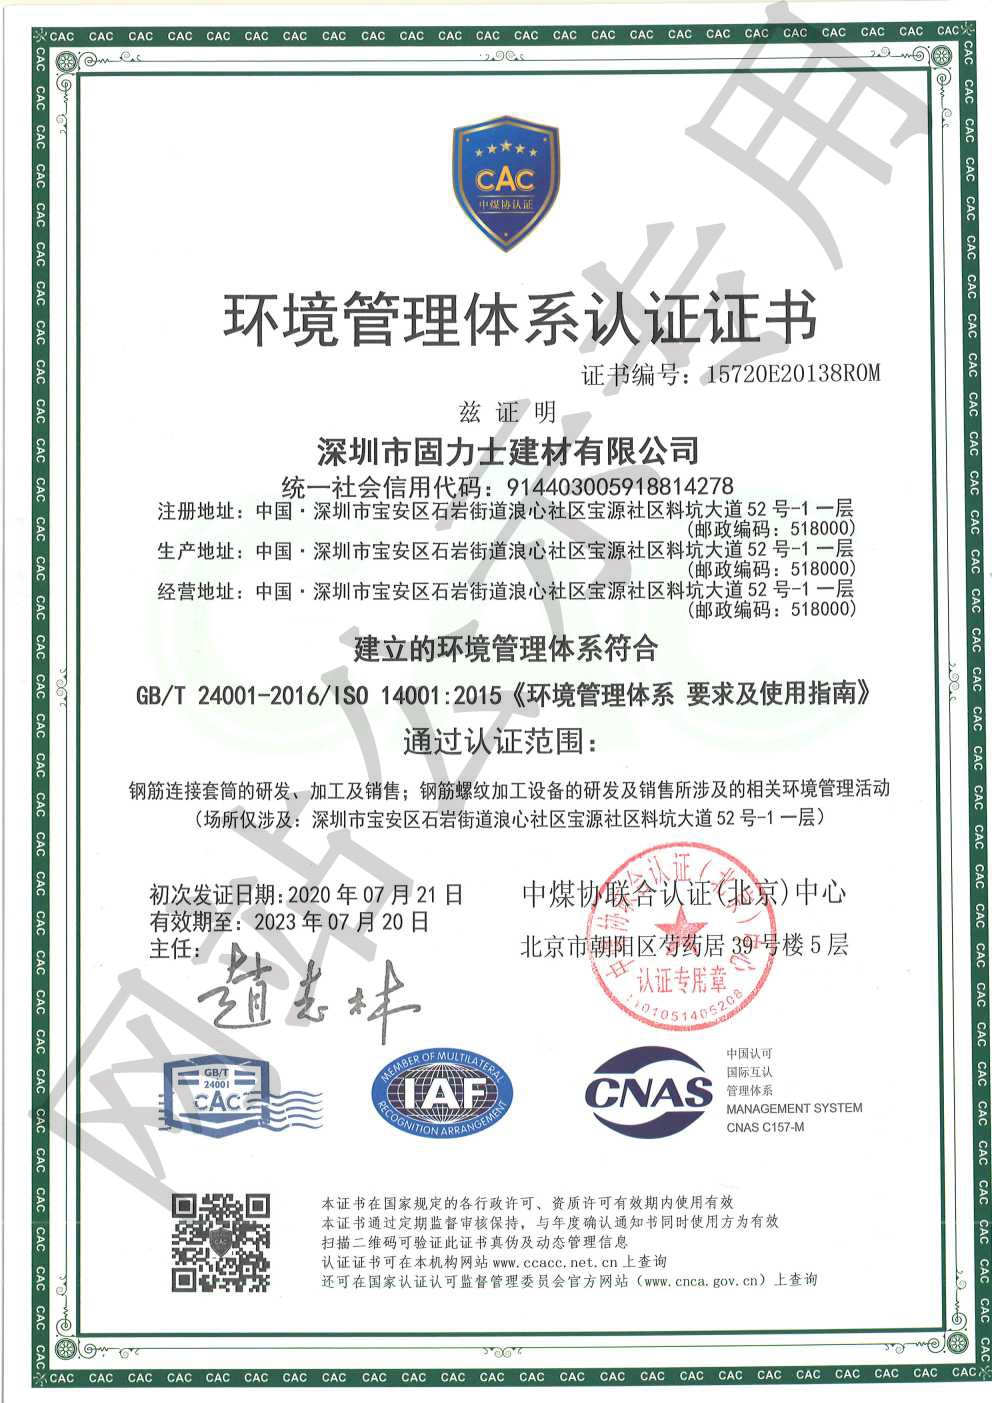 盘山ISO14001证书